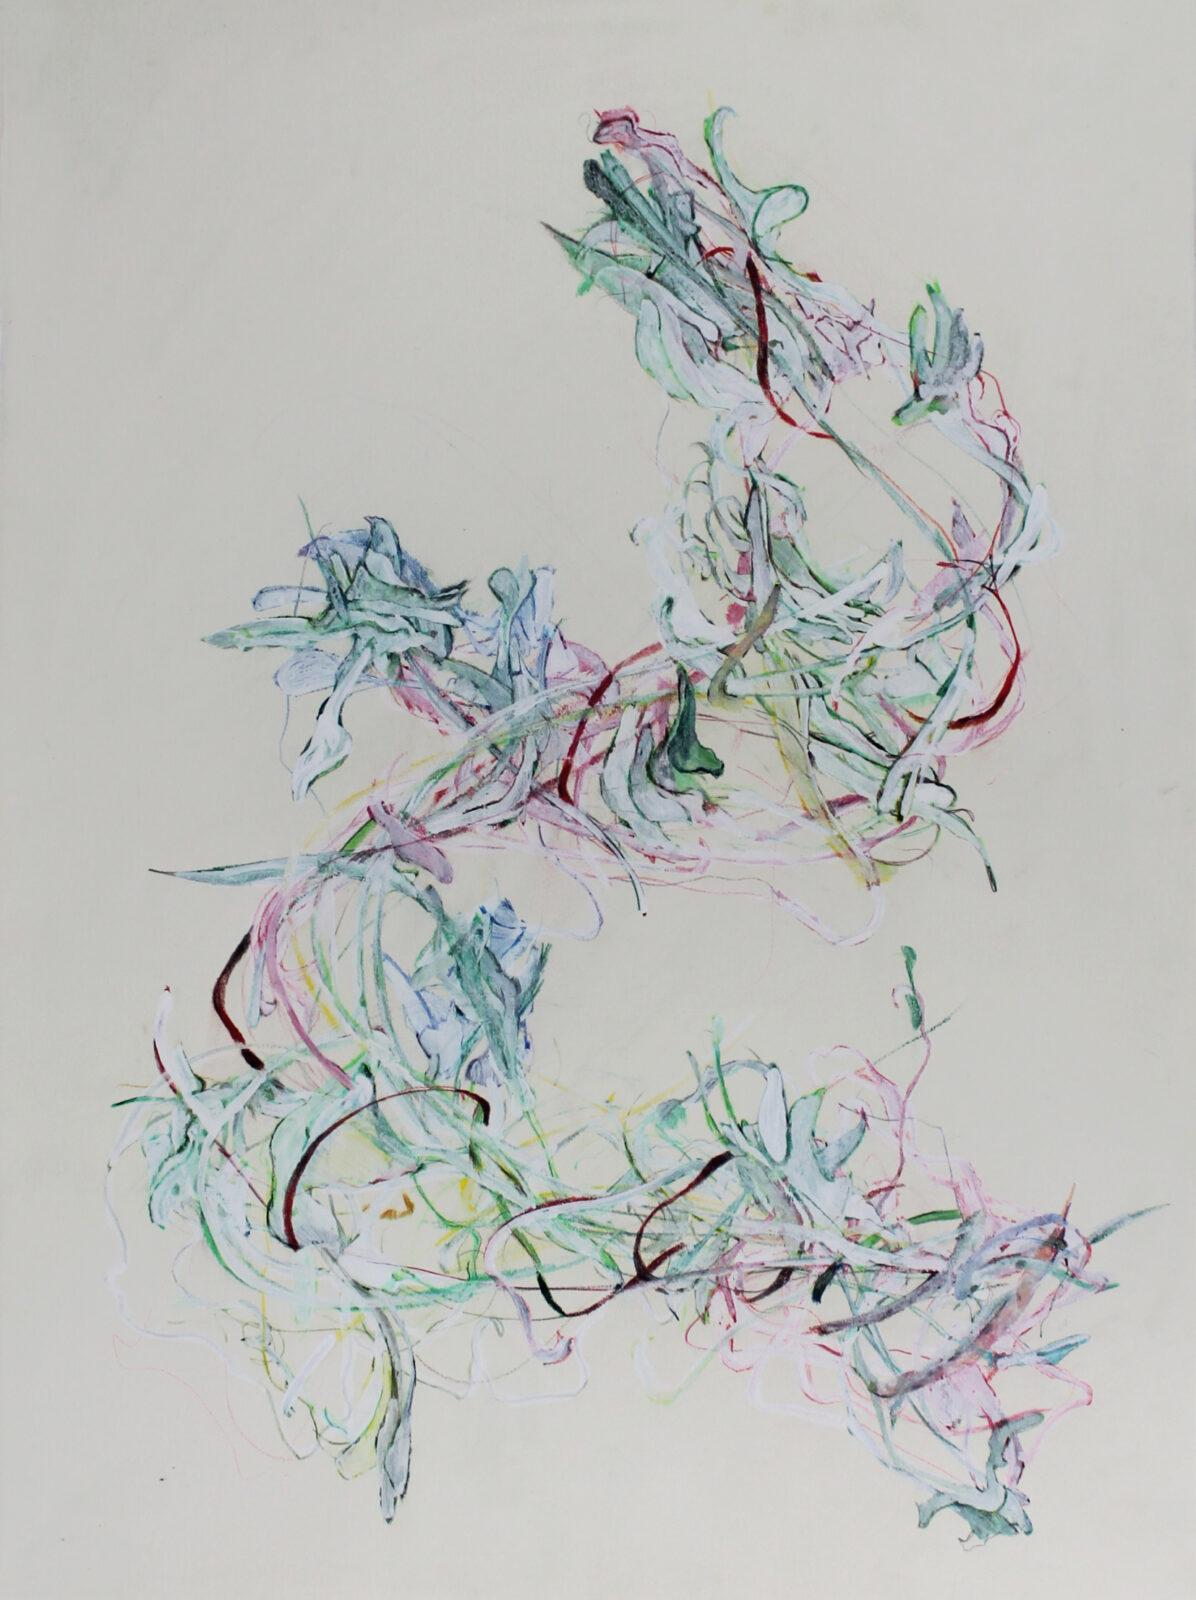 Stéphanie Leblon, Melissa officinalis II, pen en gouache op papier, 2020, 75,5cm x 55,5cm